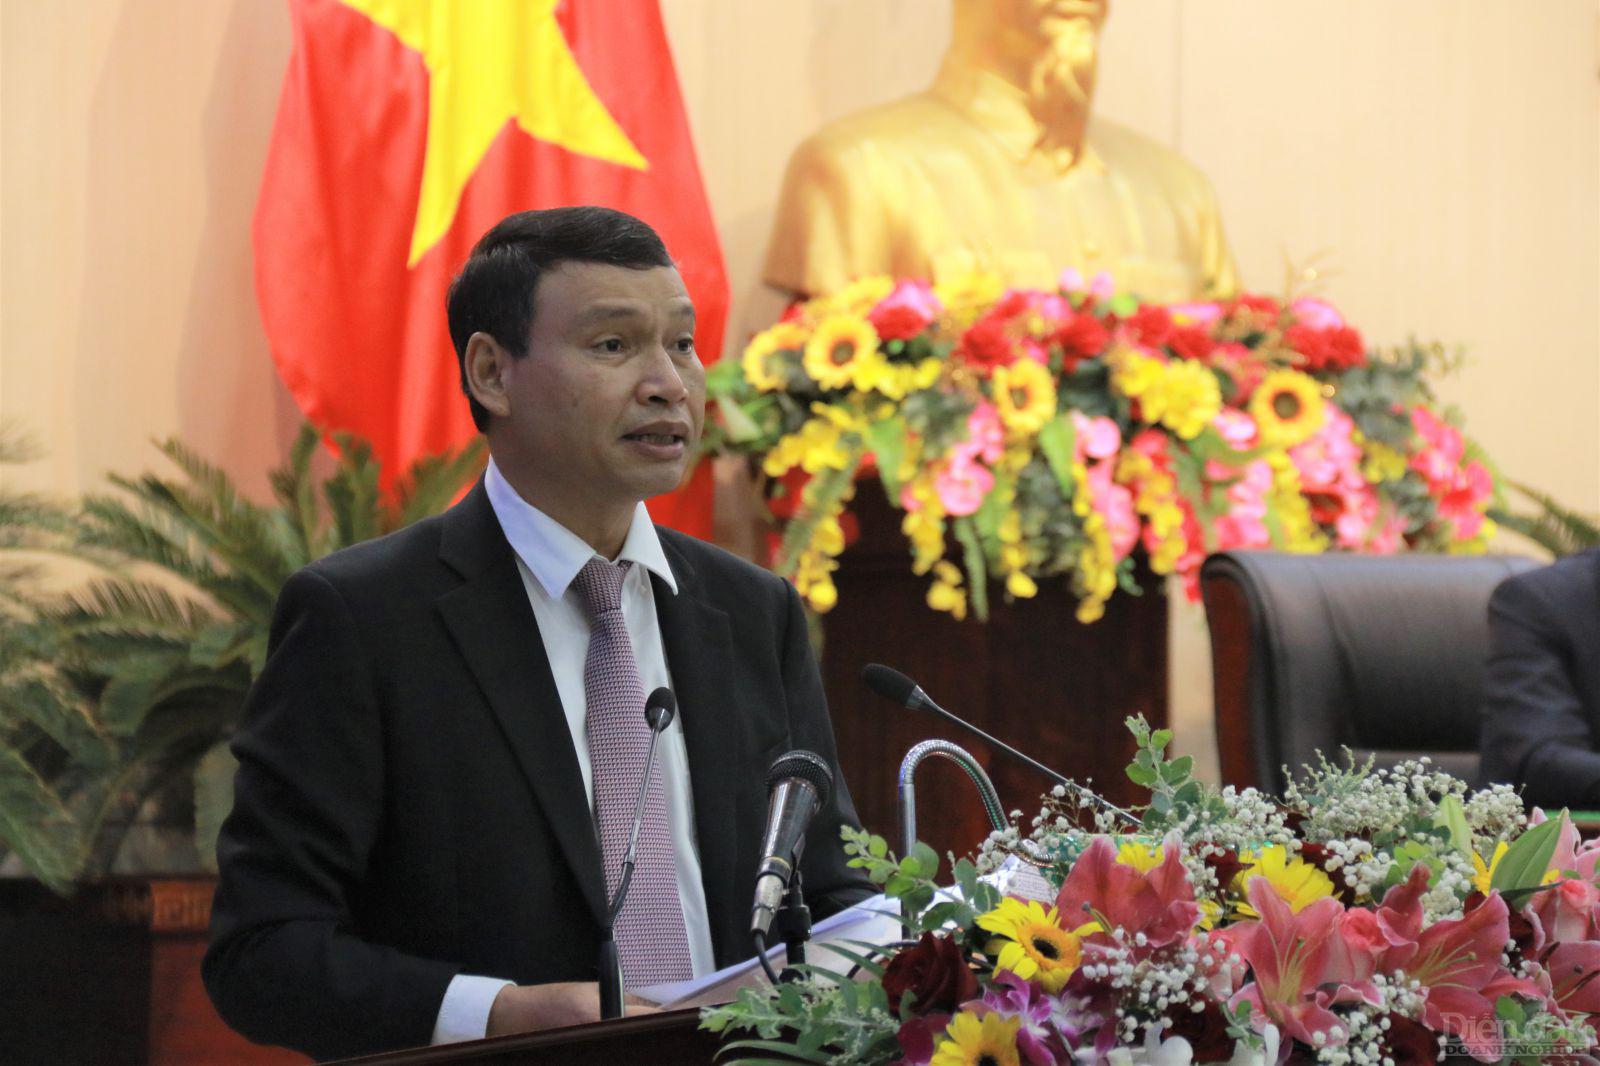 Ông Hồ Kỳ Minh - Phỏ Chủ tịch UBND TP. Đà Nẵng cho biết thành phố chịu tác động của dịch bệnh và thiên tai đã không duy trì được mức tăng trưởng như những năm trước.